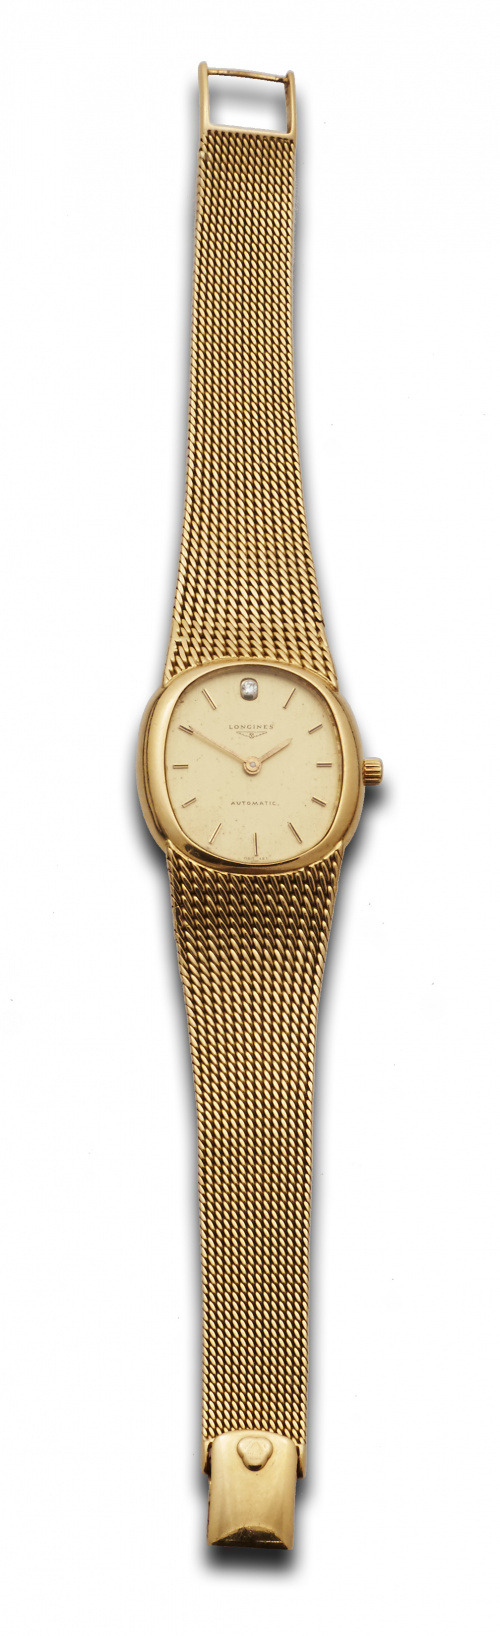 Reloj de pulsera LONGINES en oro de 18K .Automático,años 70.